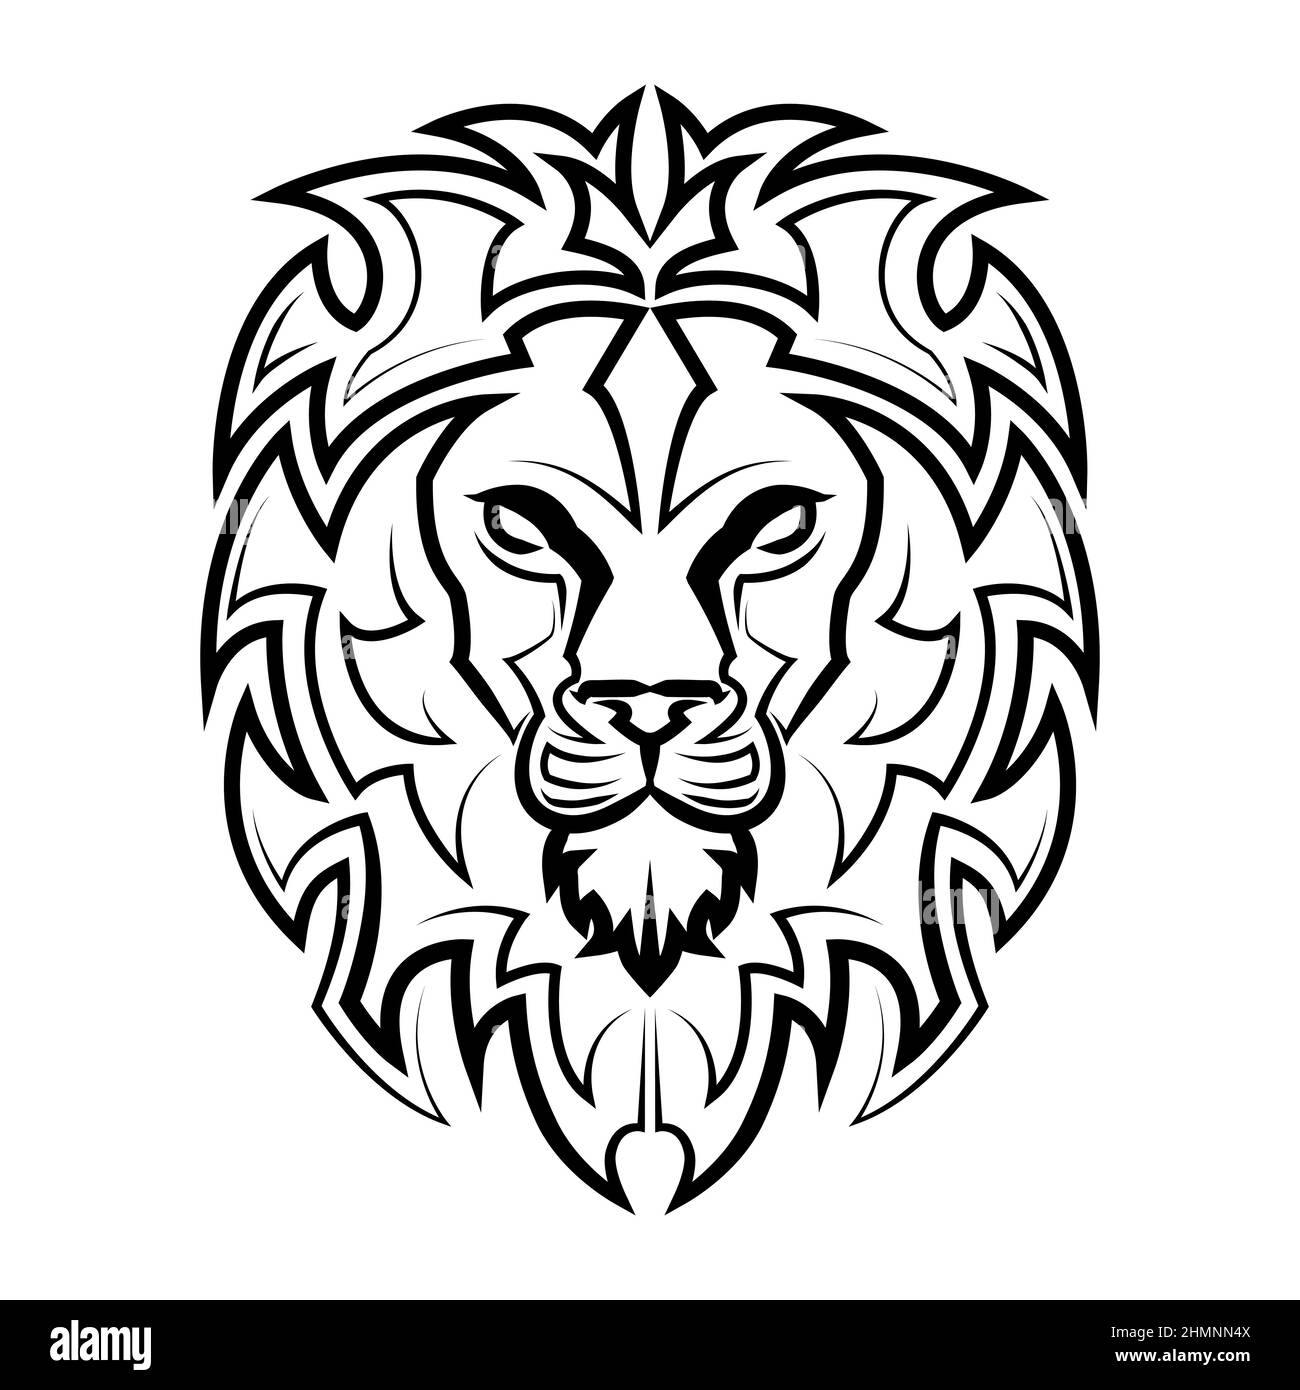 Dessin au trait noir et blanc de l'avant de la tête du lion. Il est signe de léo zodiaque. Bon usage pour symbole, mascotte, icône, avatar, tatouage, Motif t-shirt, Illustration de Vecteur